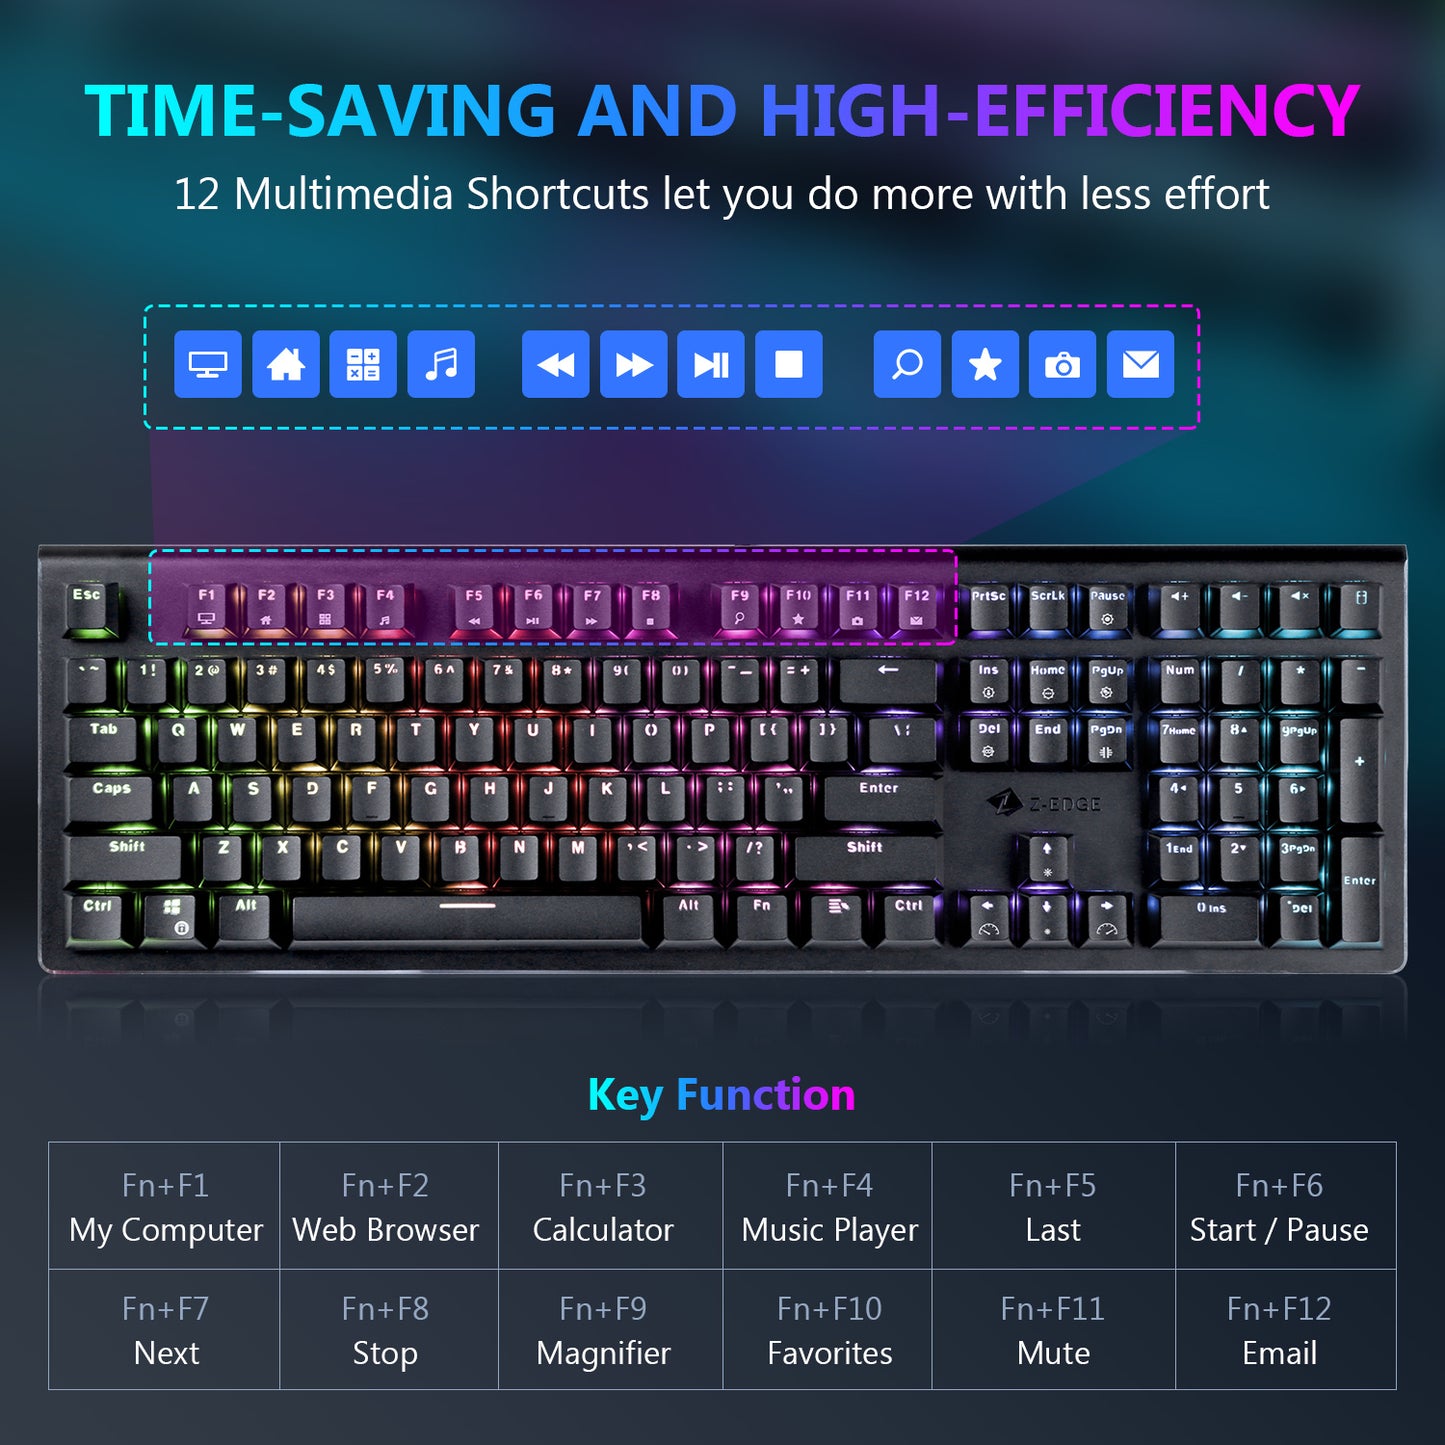 Z-EDGE Gaming Keyboard